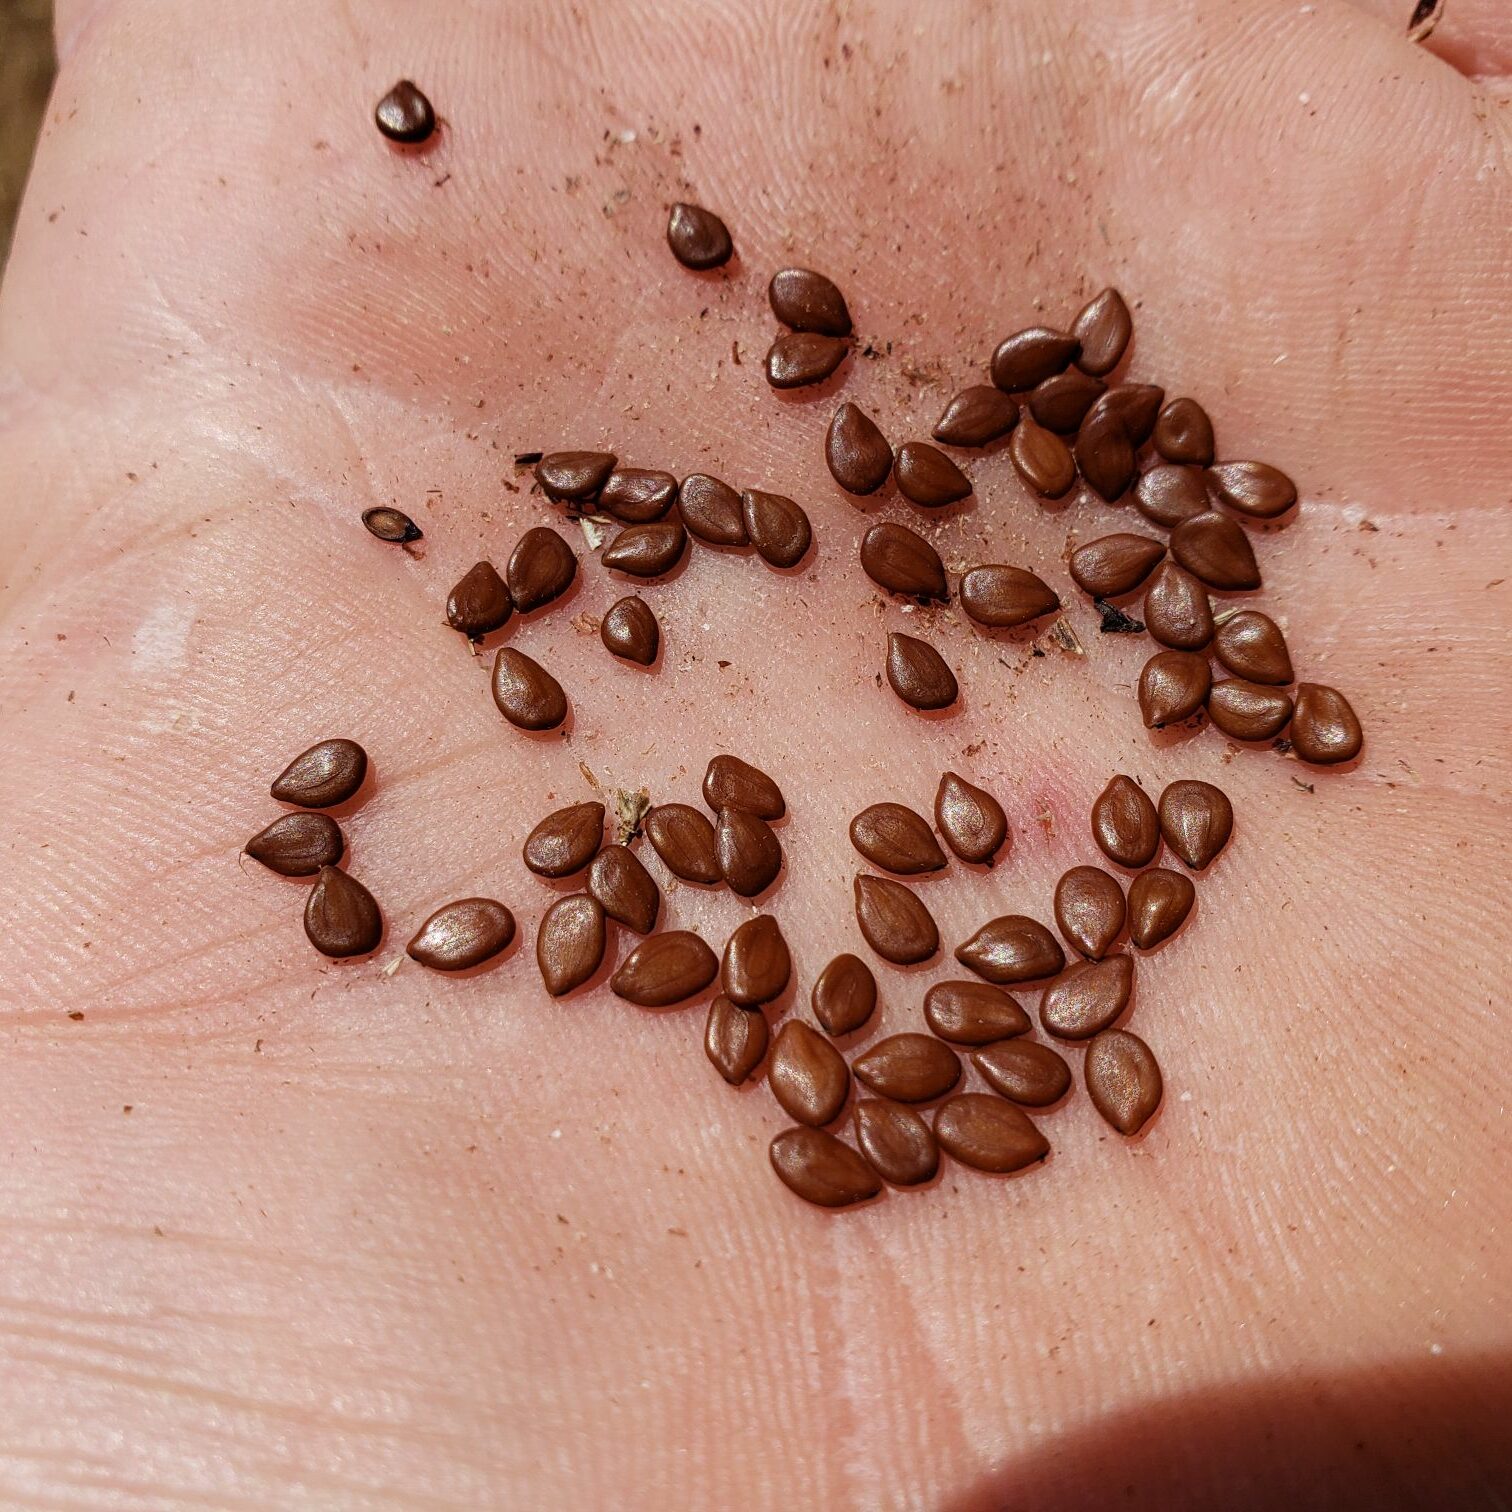 Illinois Bundleflower Seed